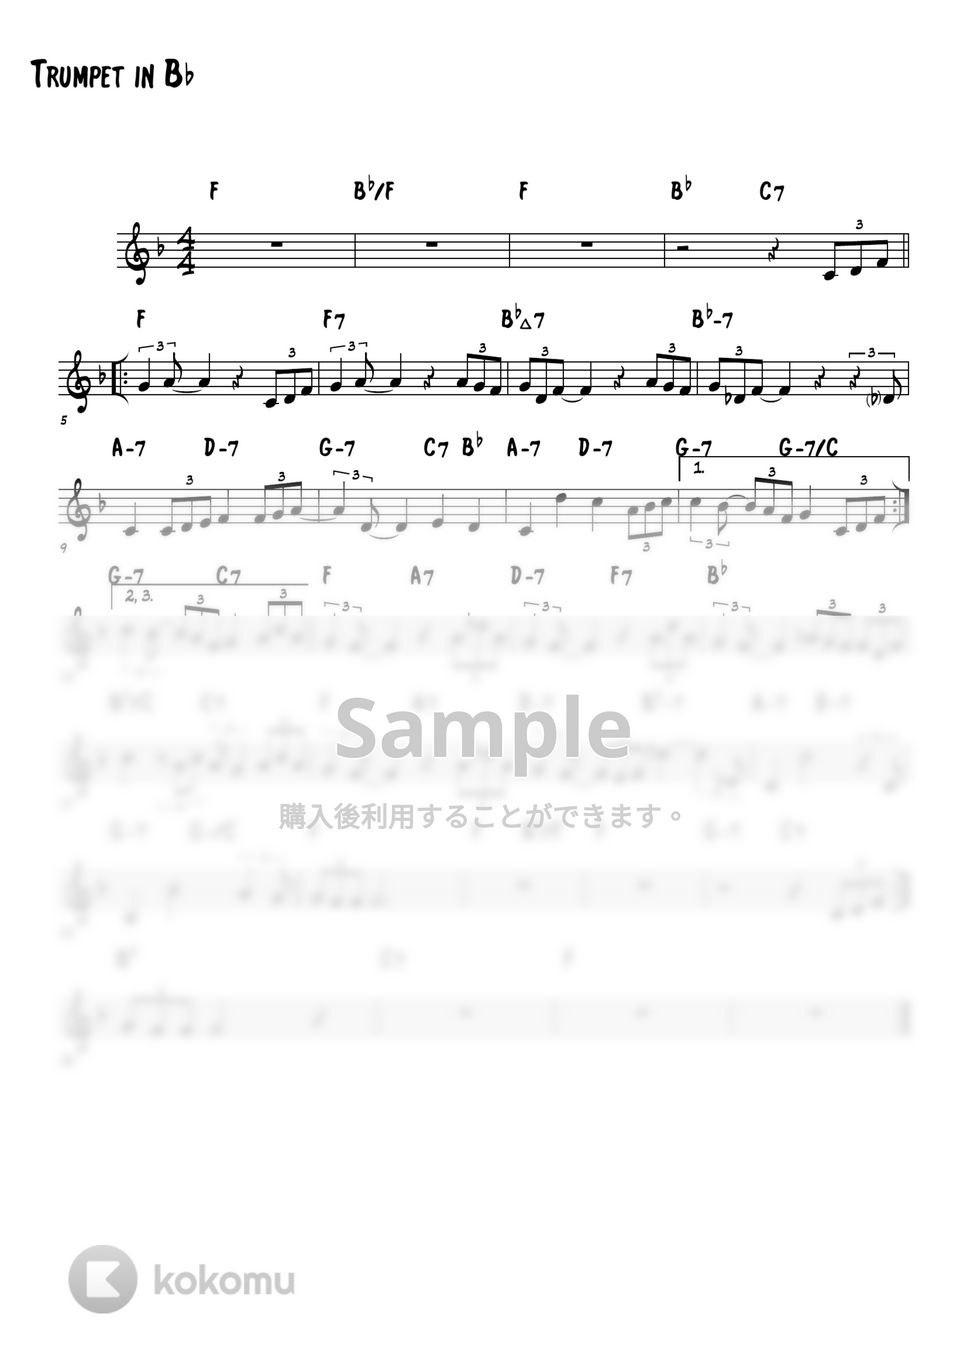 松田聖子 - Sweet Memories (トランペットメロディー楽譜) by 高田将利